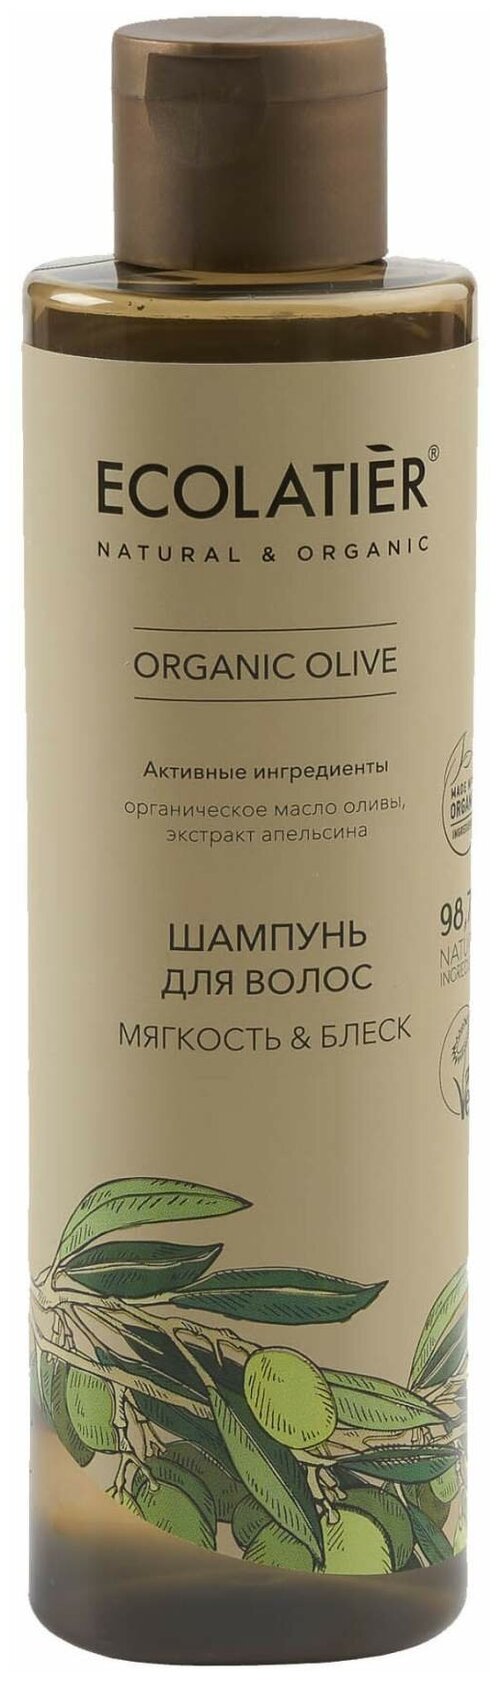 Шампунь для волос Ecolatier/ GREEN Мягкость & Блеск Серия ORGANIC OLIVE, 250 мл